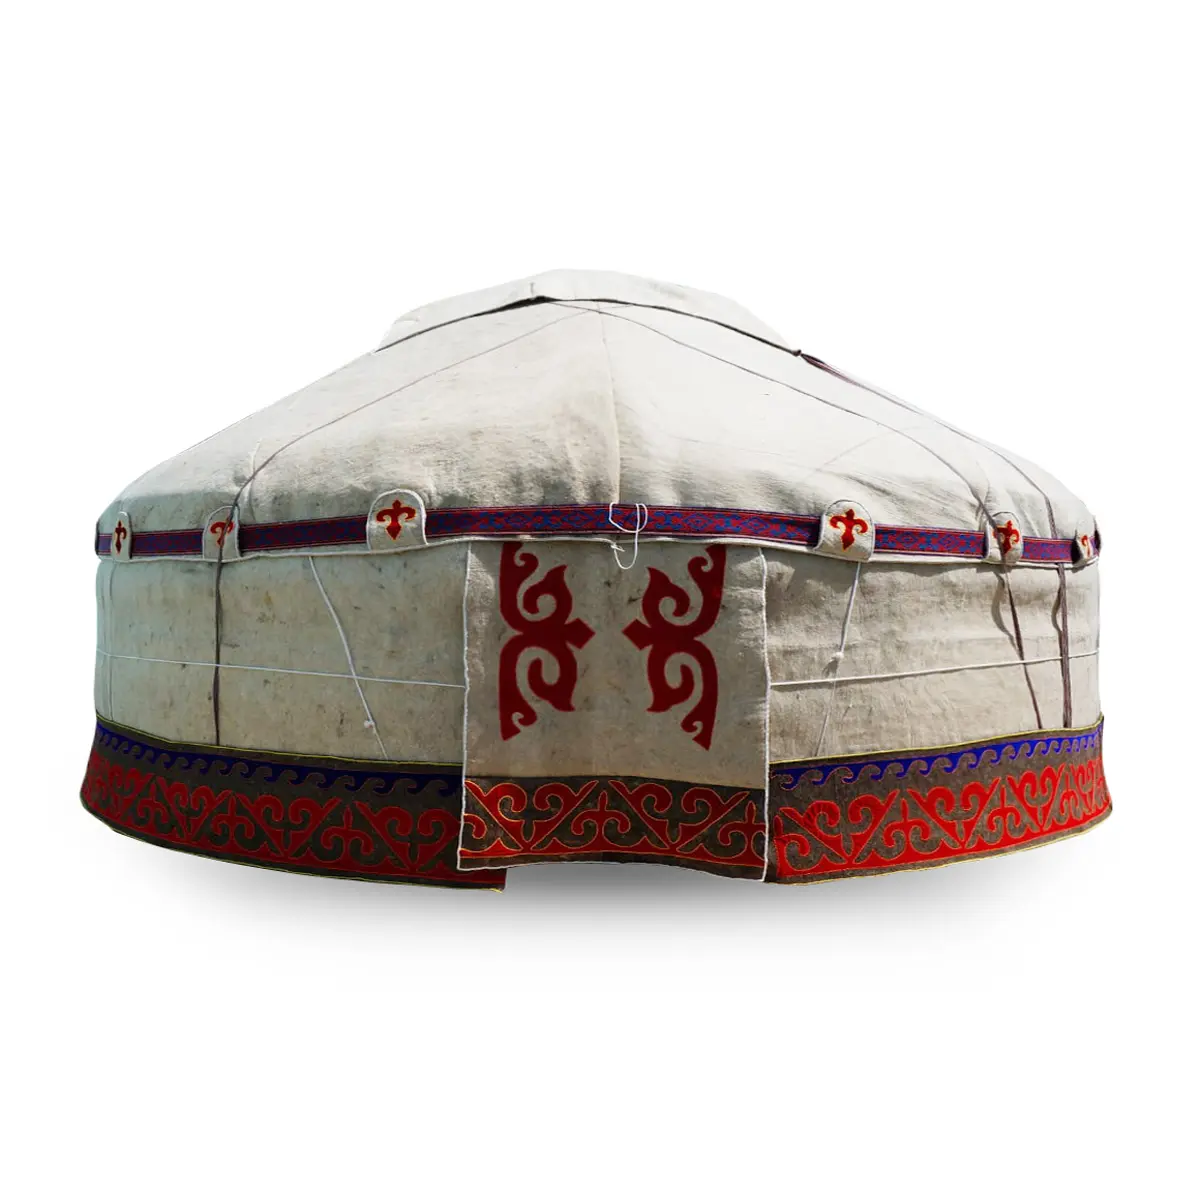 Tradisional Kazakhstan diameter yurt 9.2 meter terbuat dari bahan alami harga grosir rumah yurt